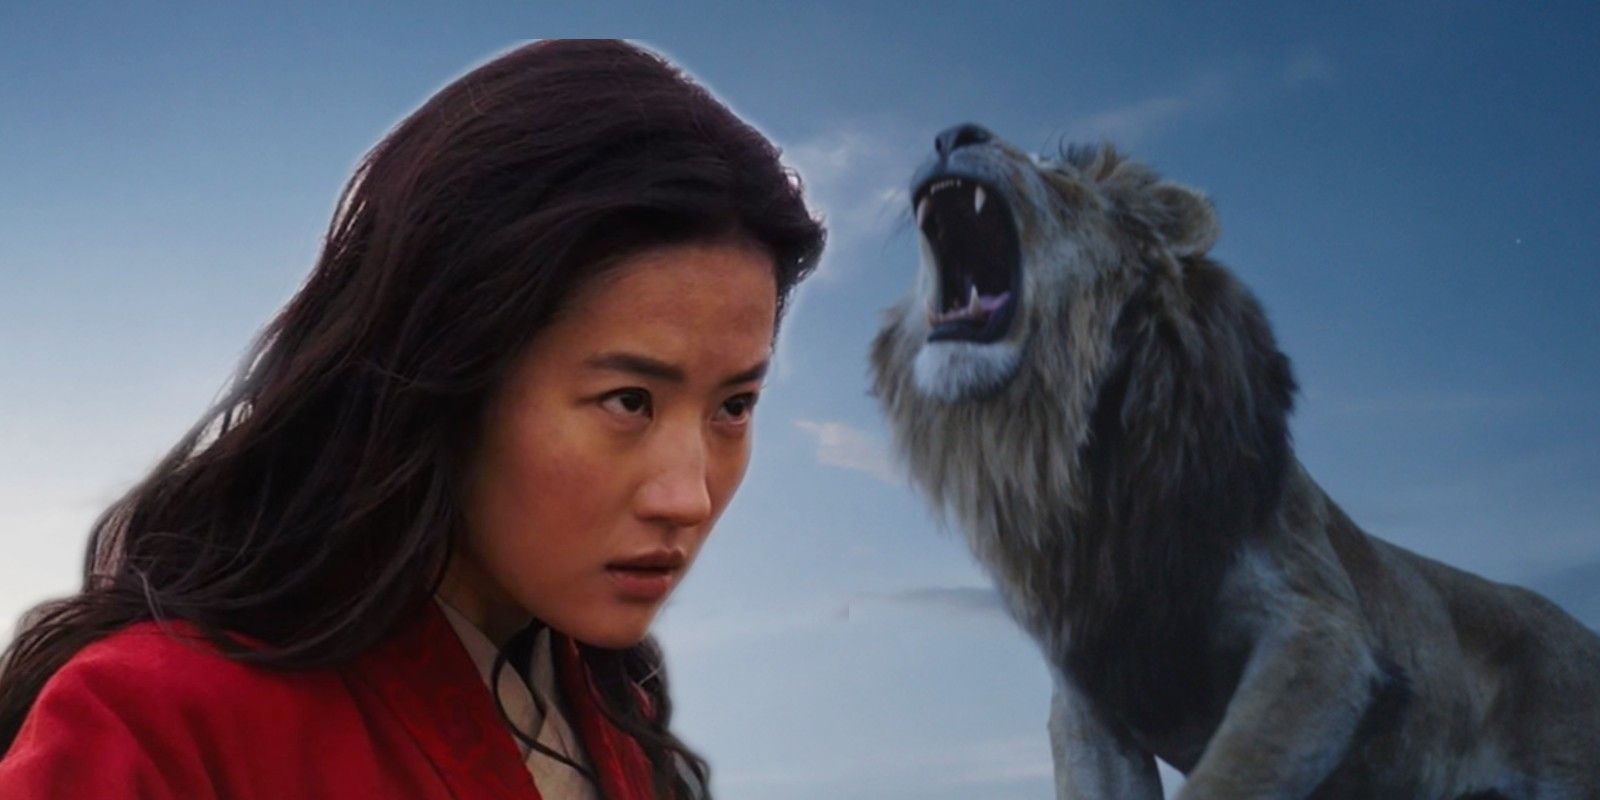 Mulan Set To Make Less Than Half Of Lion King At China Box Office